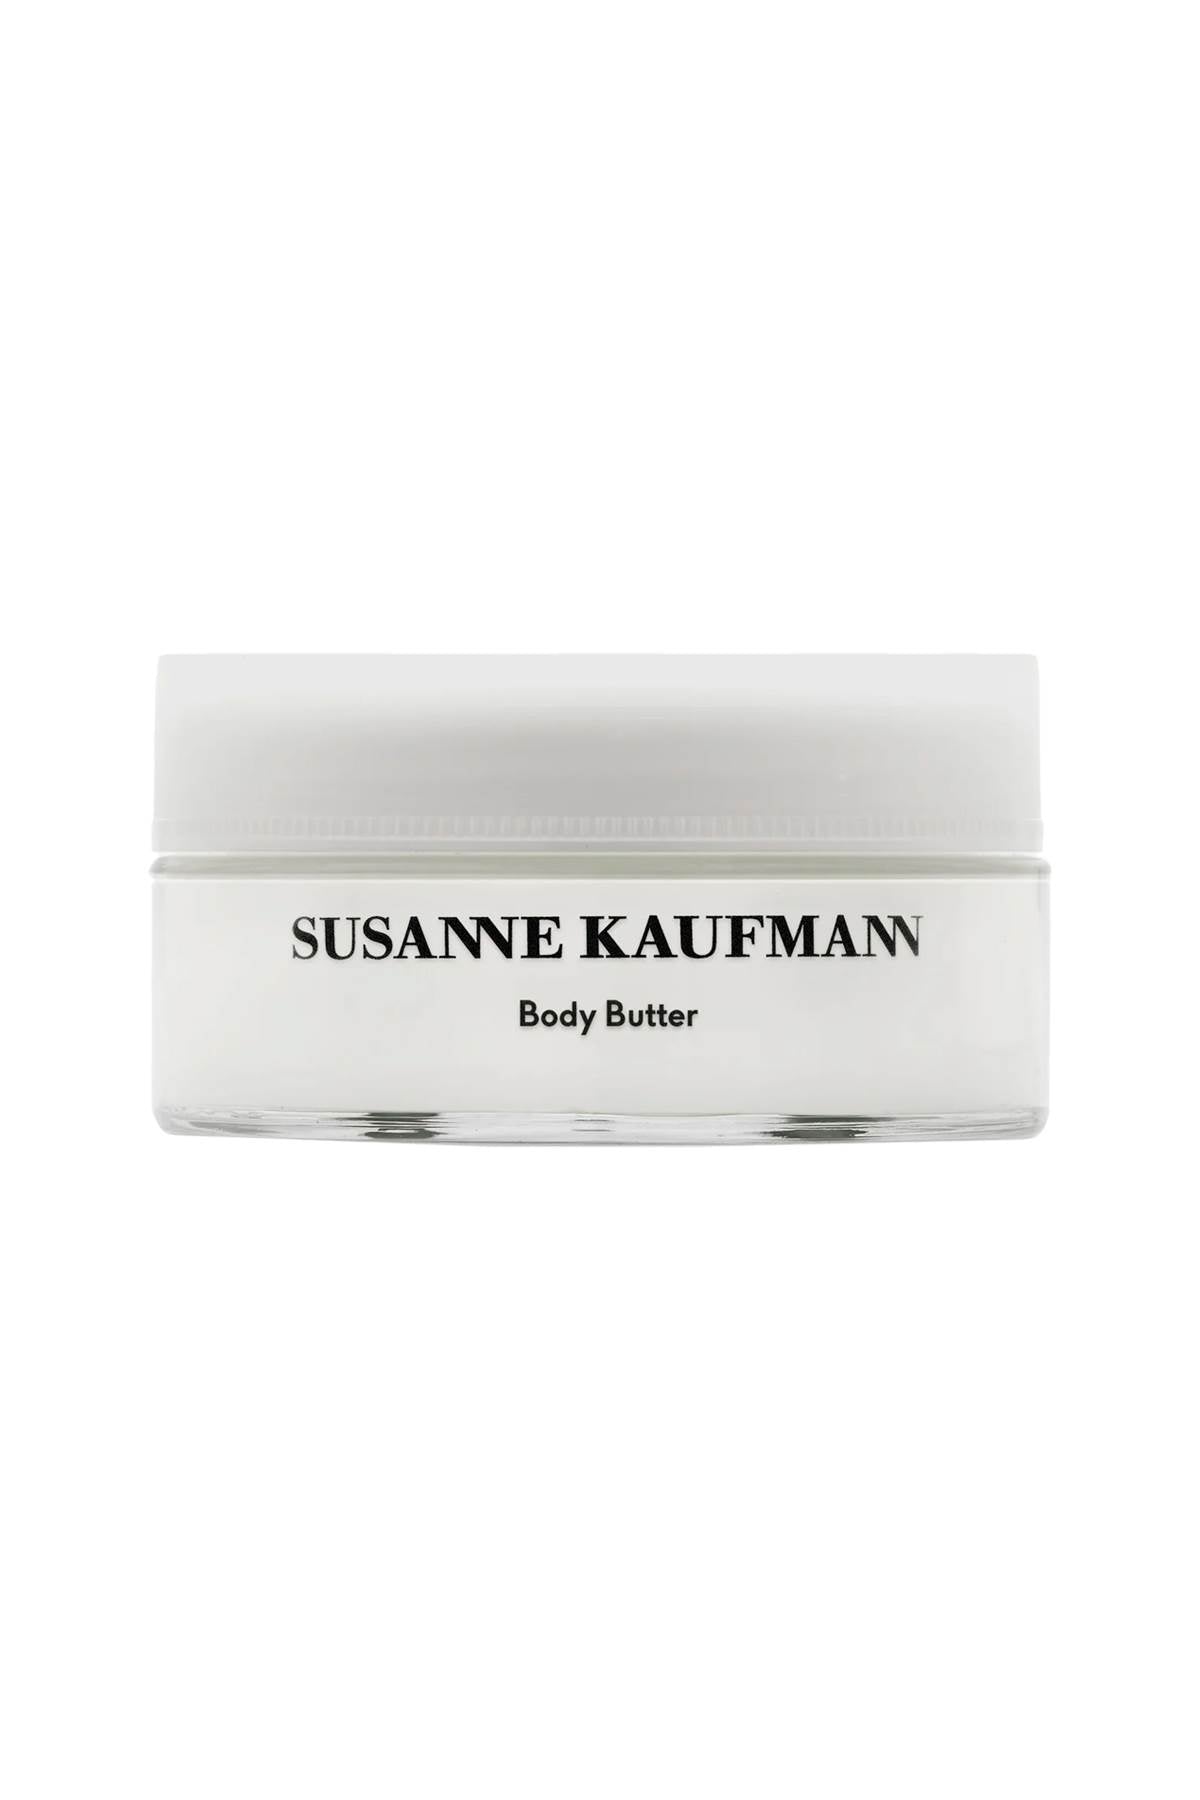 Susanne kaufmann body butter - 200 ml-0